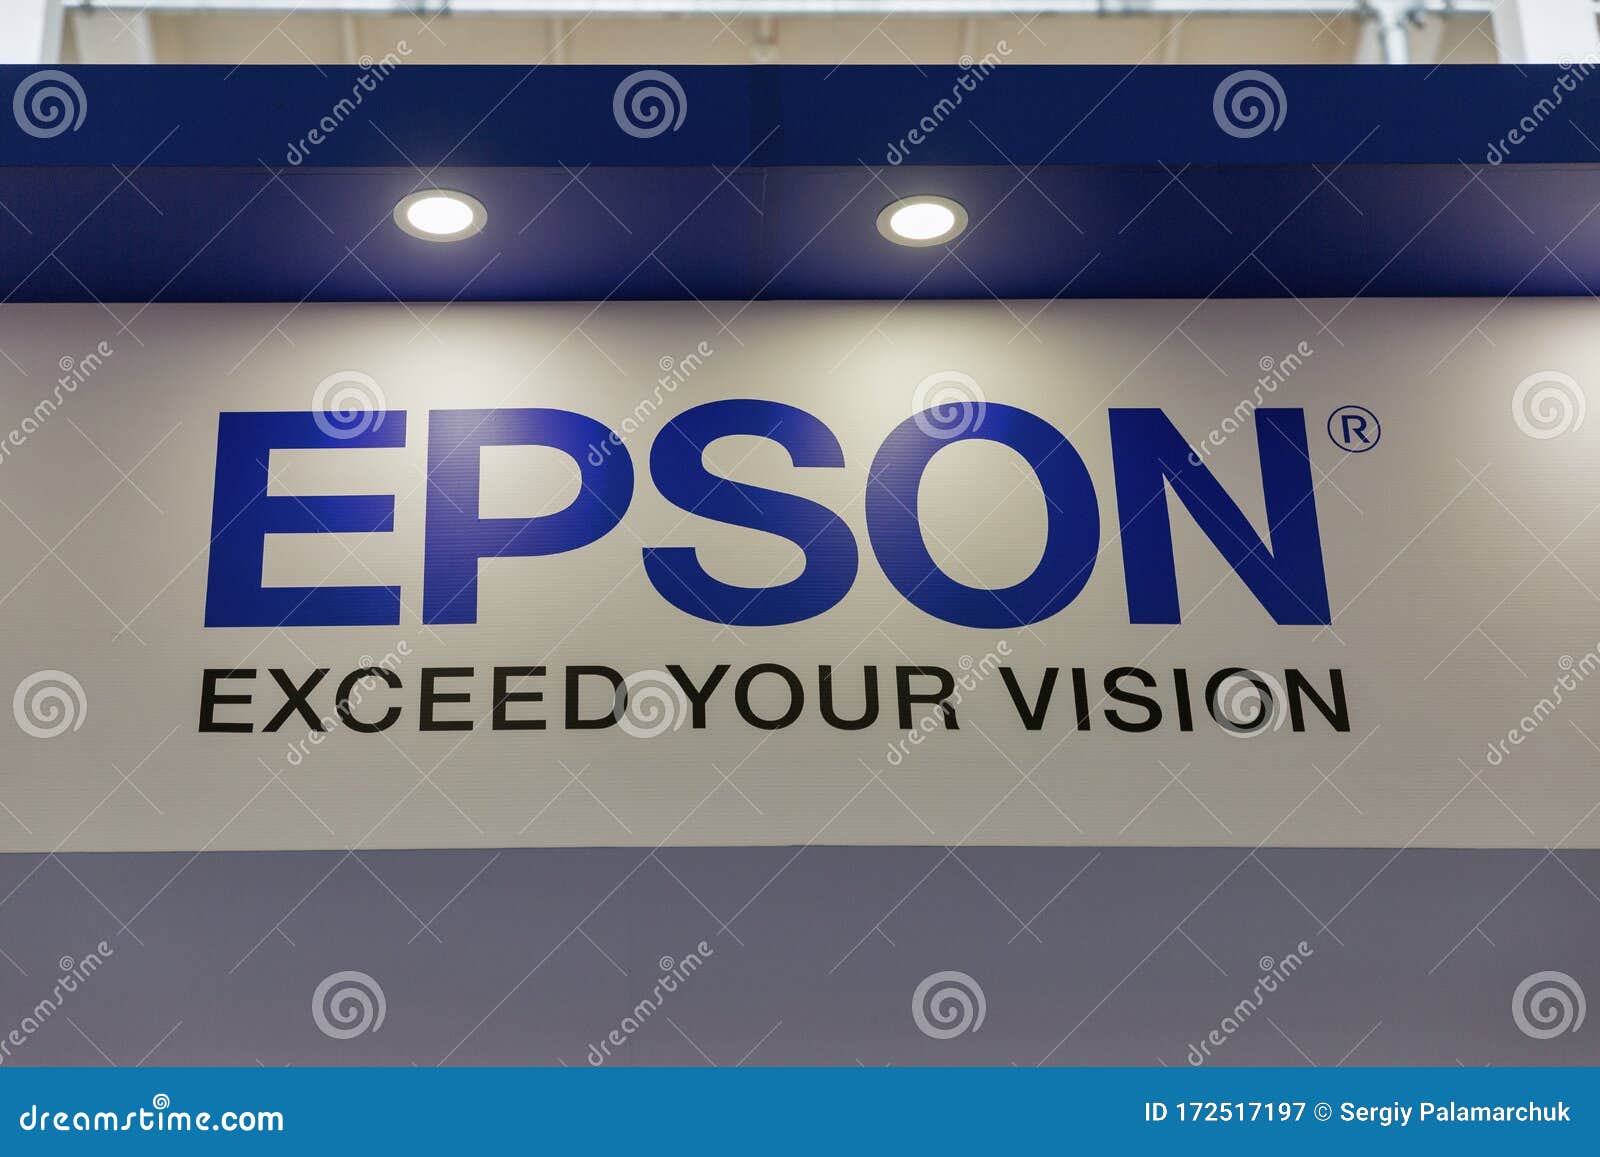 Seiko Epson To Showcase Ultra HD Electronic Viewfinder Technology |  ePHOTOzine